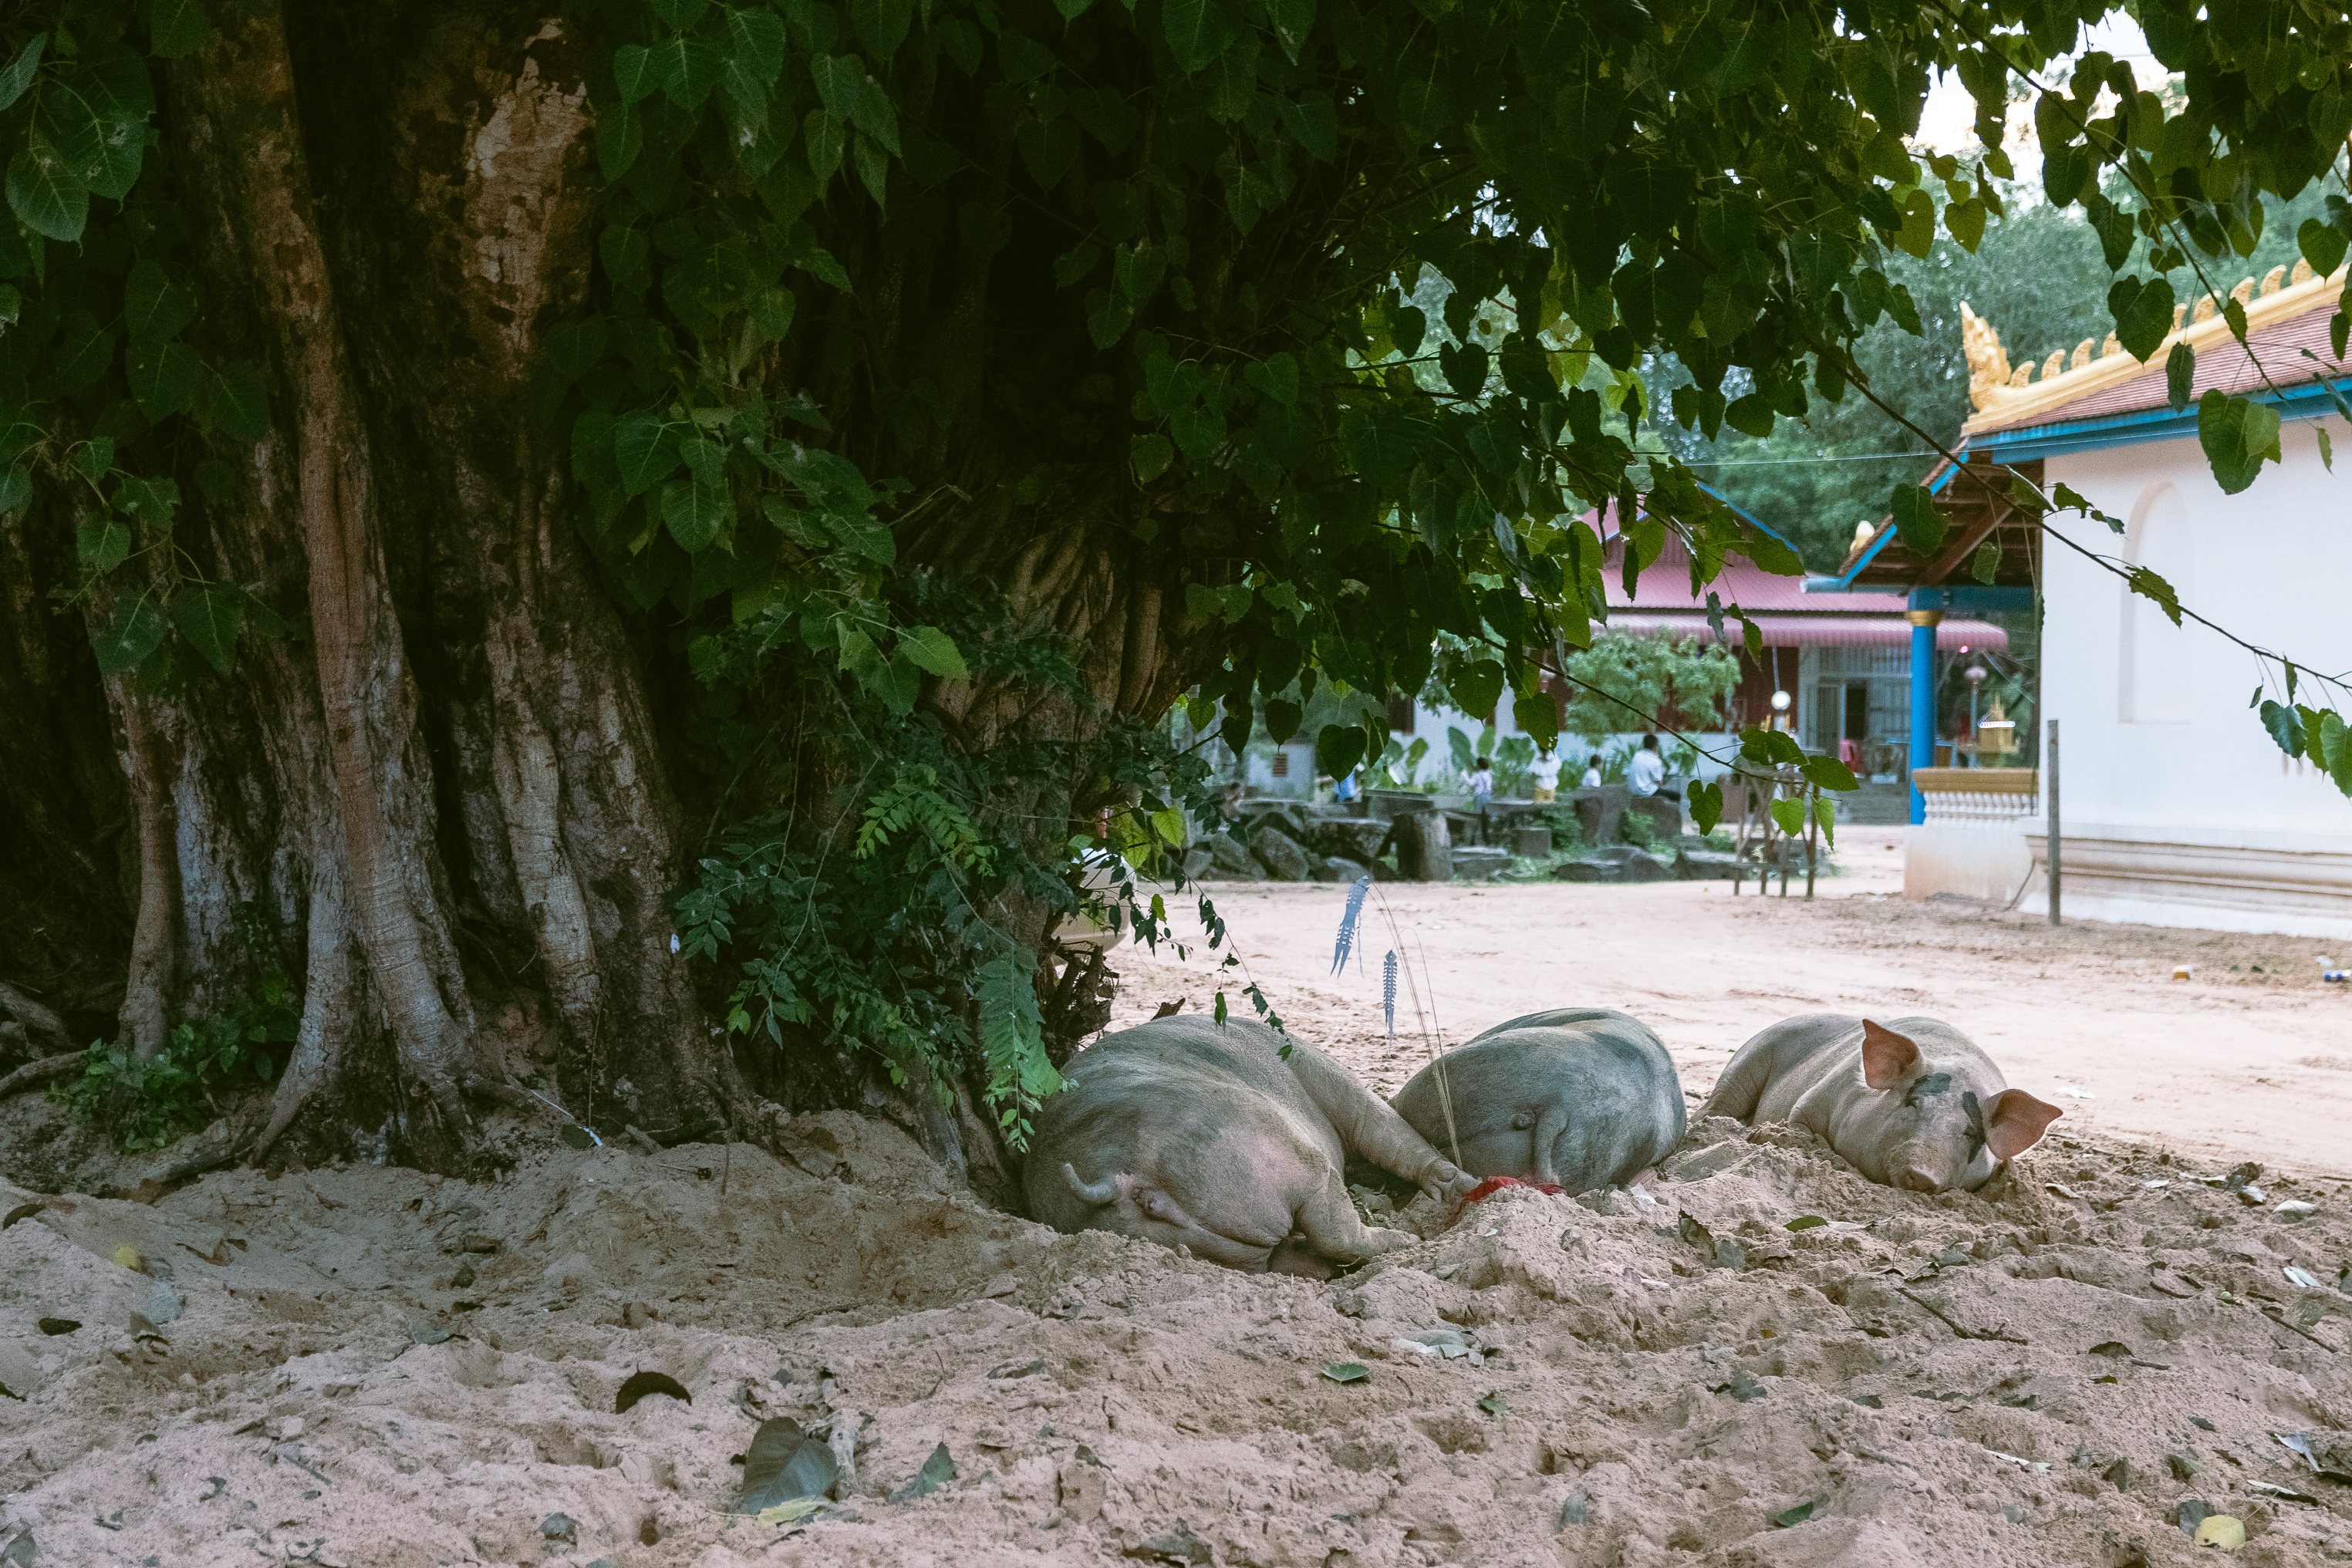 pigs lying under a tree in a street in vietnam